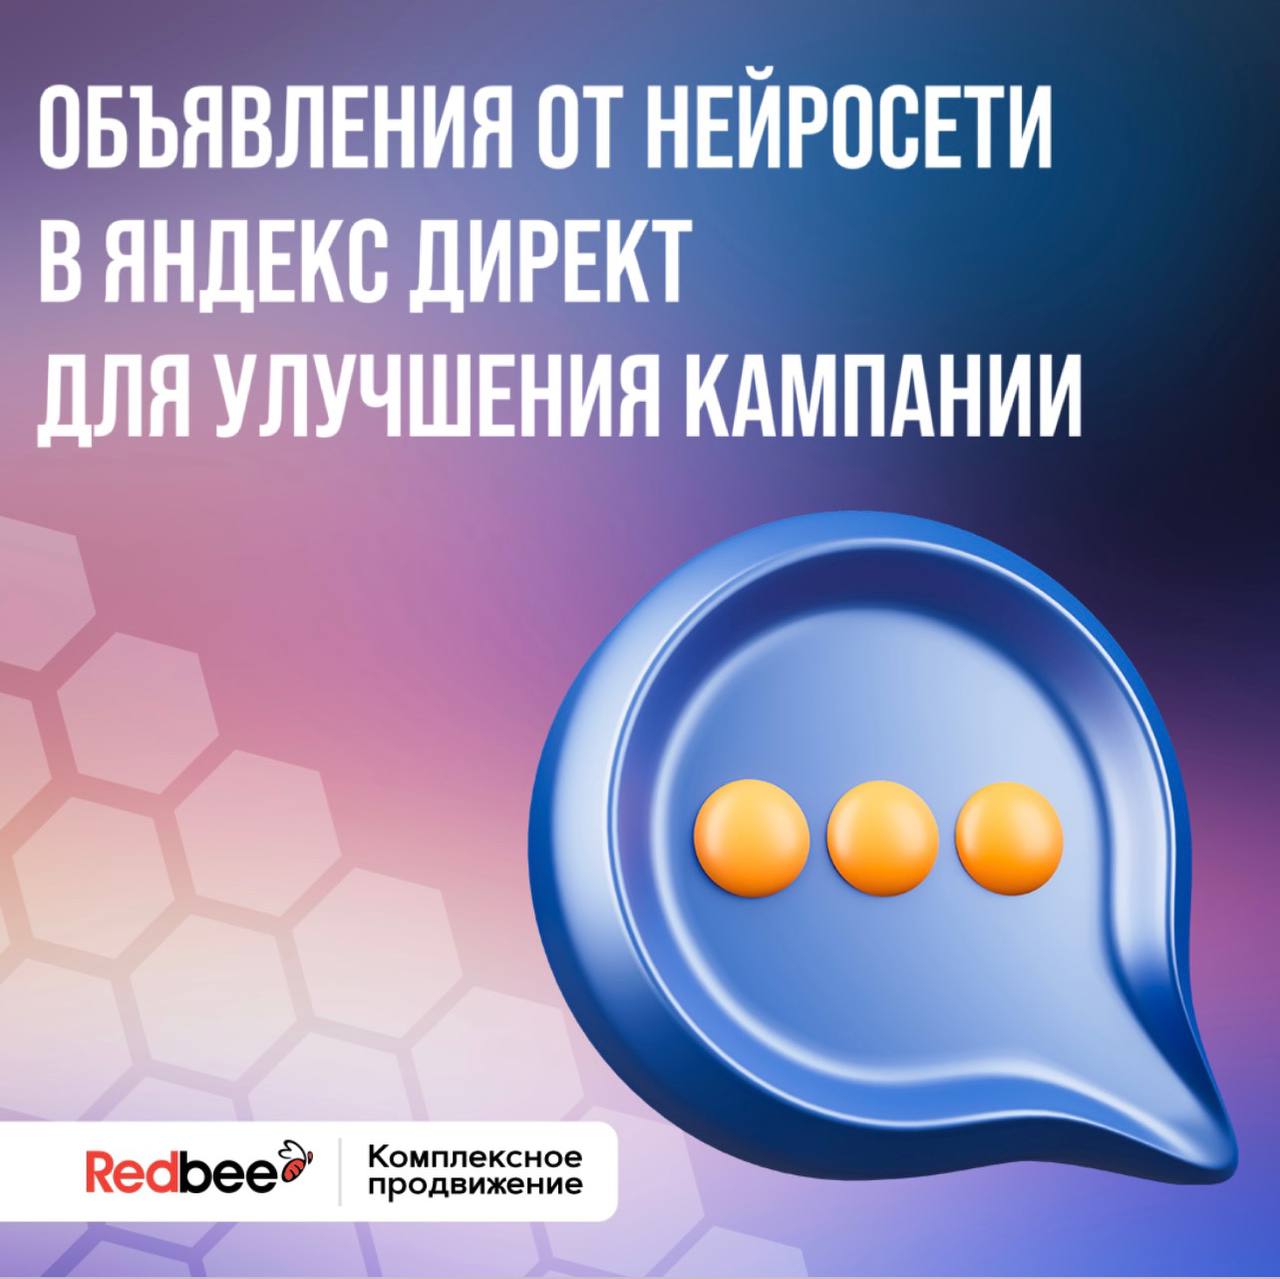 Объявления от нейросети в Яндекс Директ для улучшения эффективности кампании.